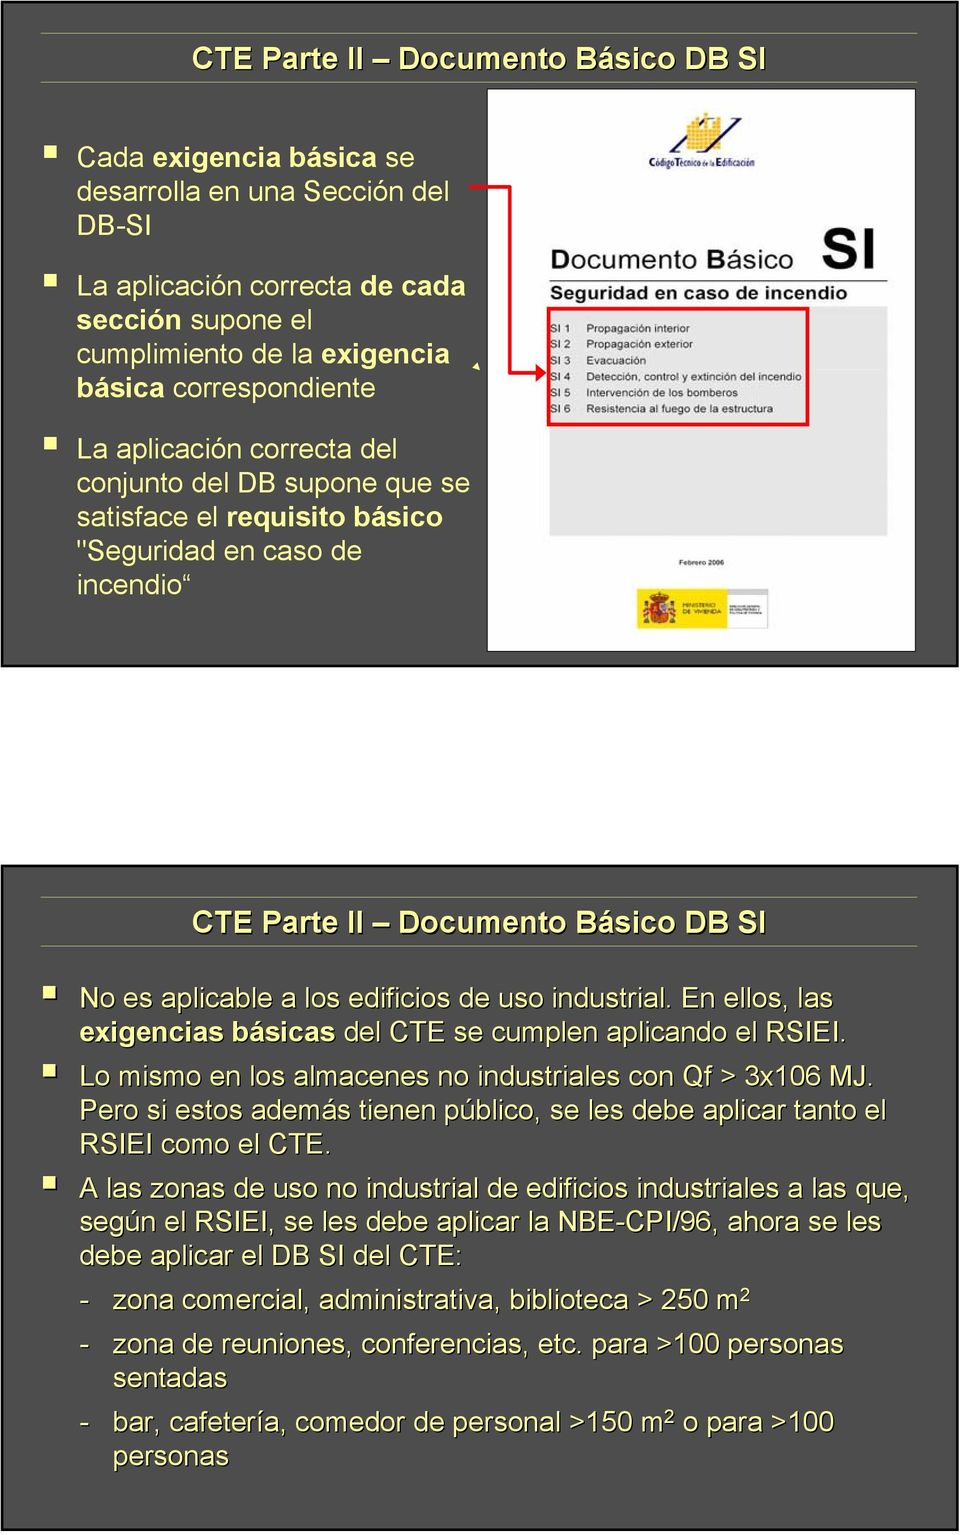 industrial. En ellos, las exigencias básicasb del CTE se cumplen aplicando el RSIEI. Lo mismo en los almacenes no industriales con Qf > 3x106 MJ.